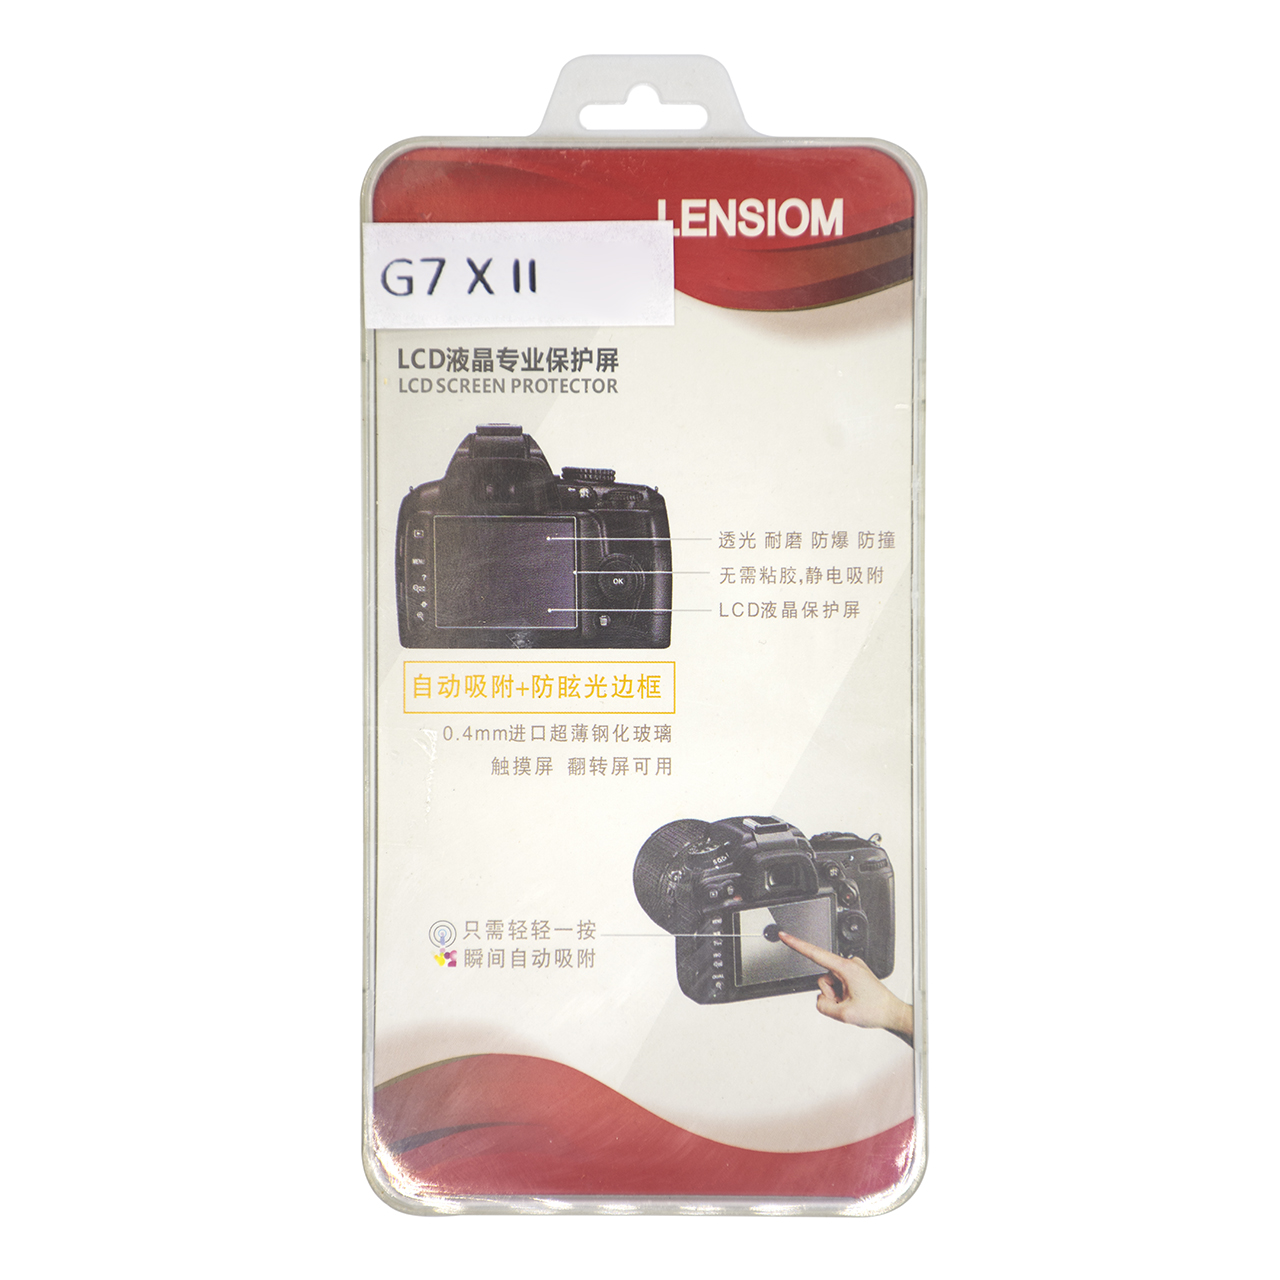  محافظ صفحه نمایش دوربین لنزیوم مدل LG7XII مناسب برای G7X II